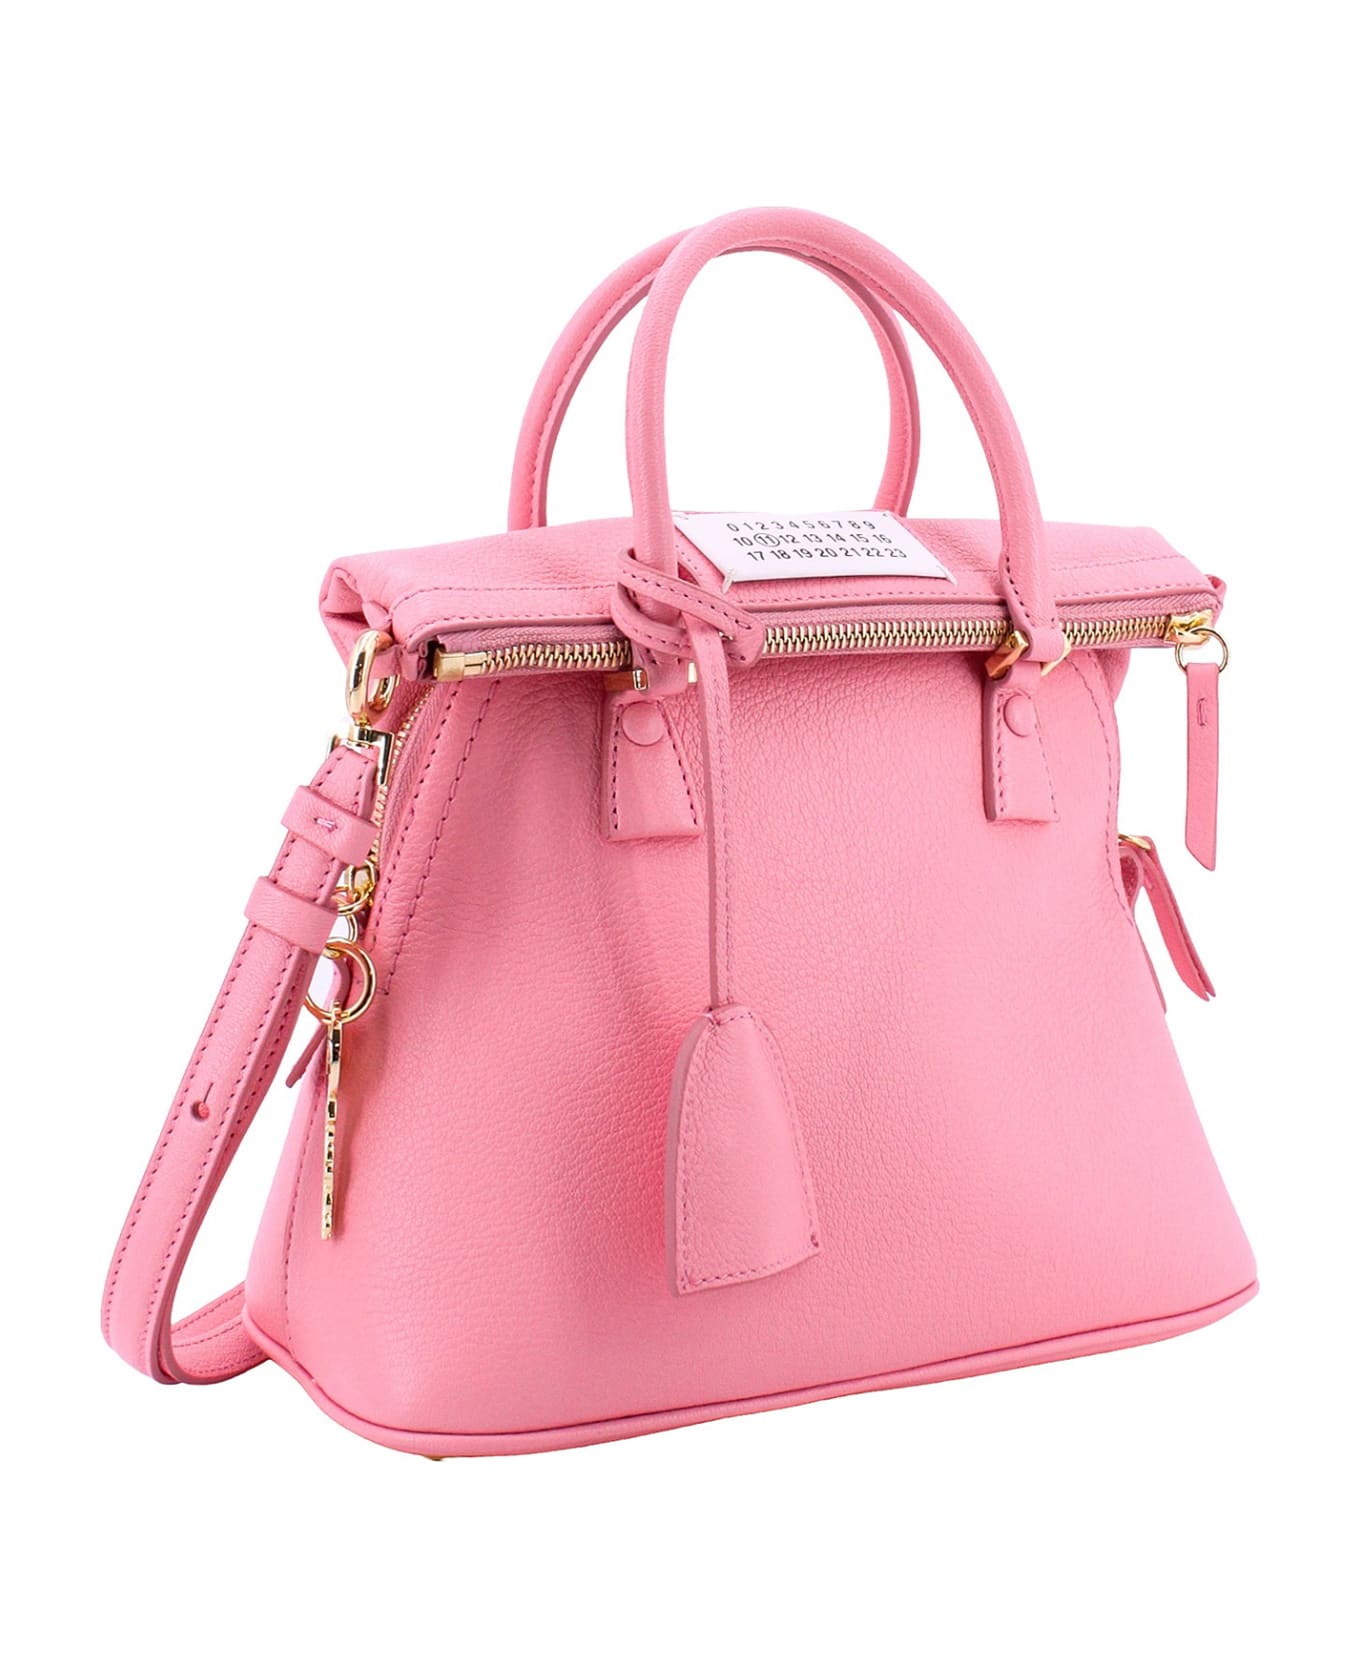 Maison Margiela 5ac Classique Handbag - Pink